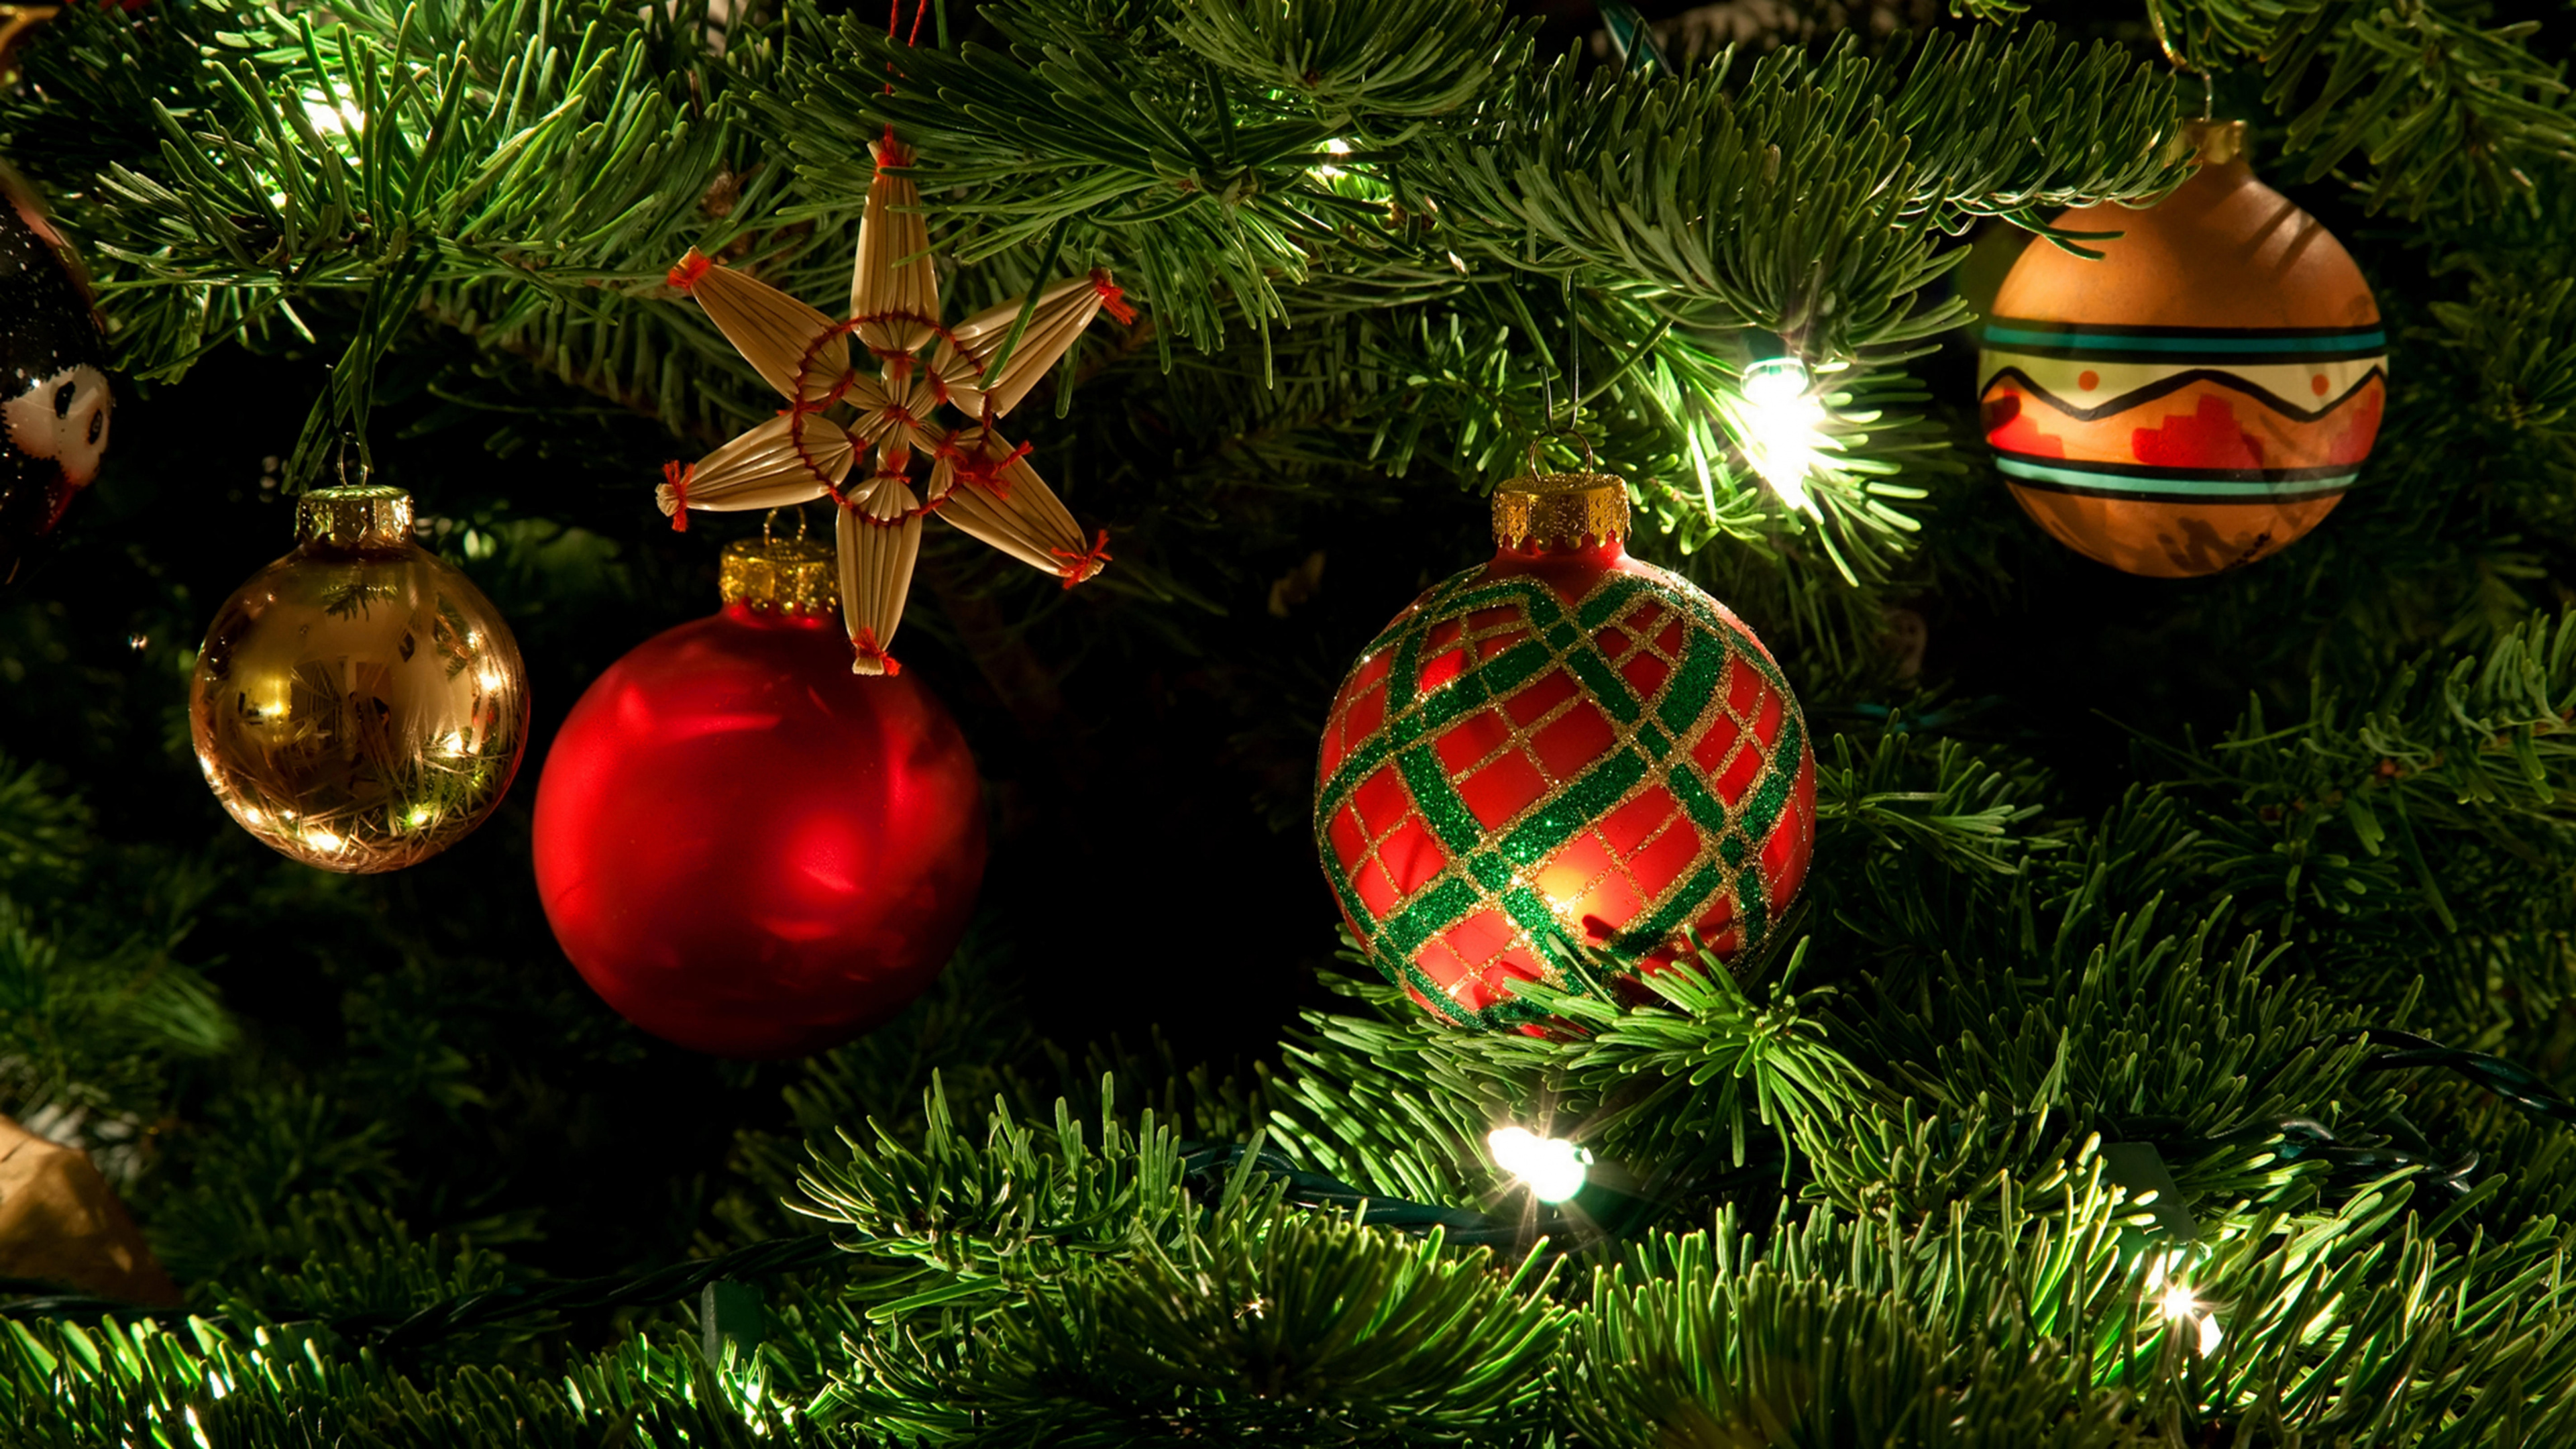 圣诞节那天, 圣诞节的装饰品, 圣诞节, 圣诞装饰, 圣诞树 壁纸 3840x2160 允许